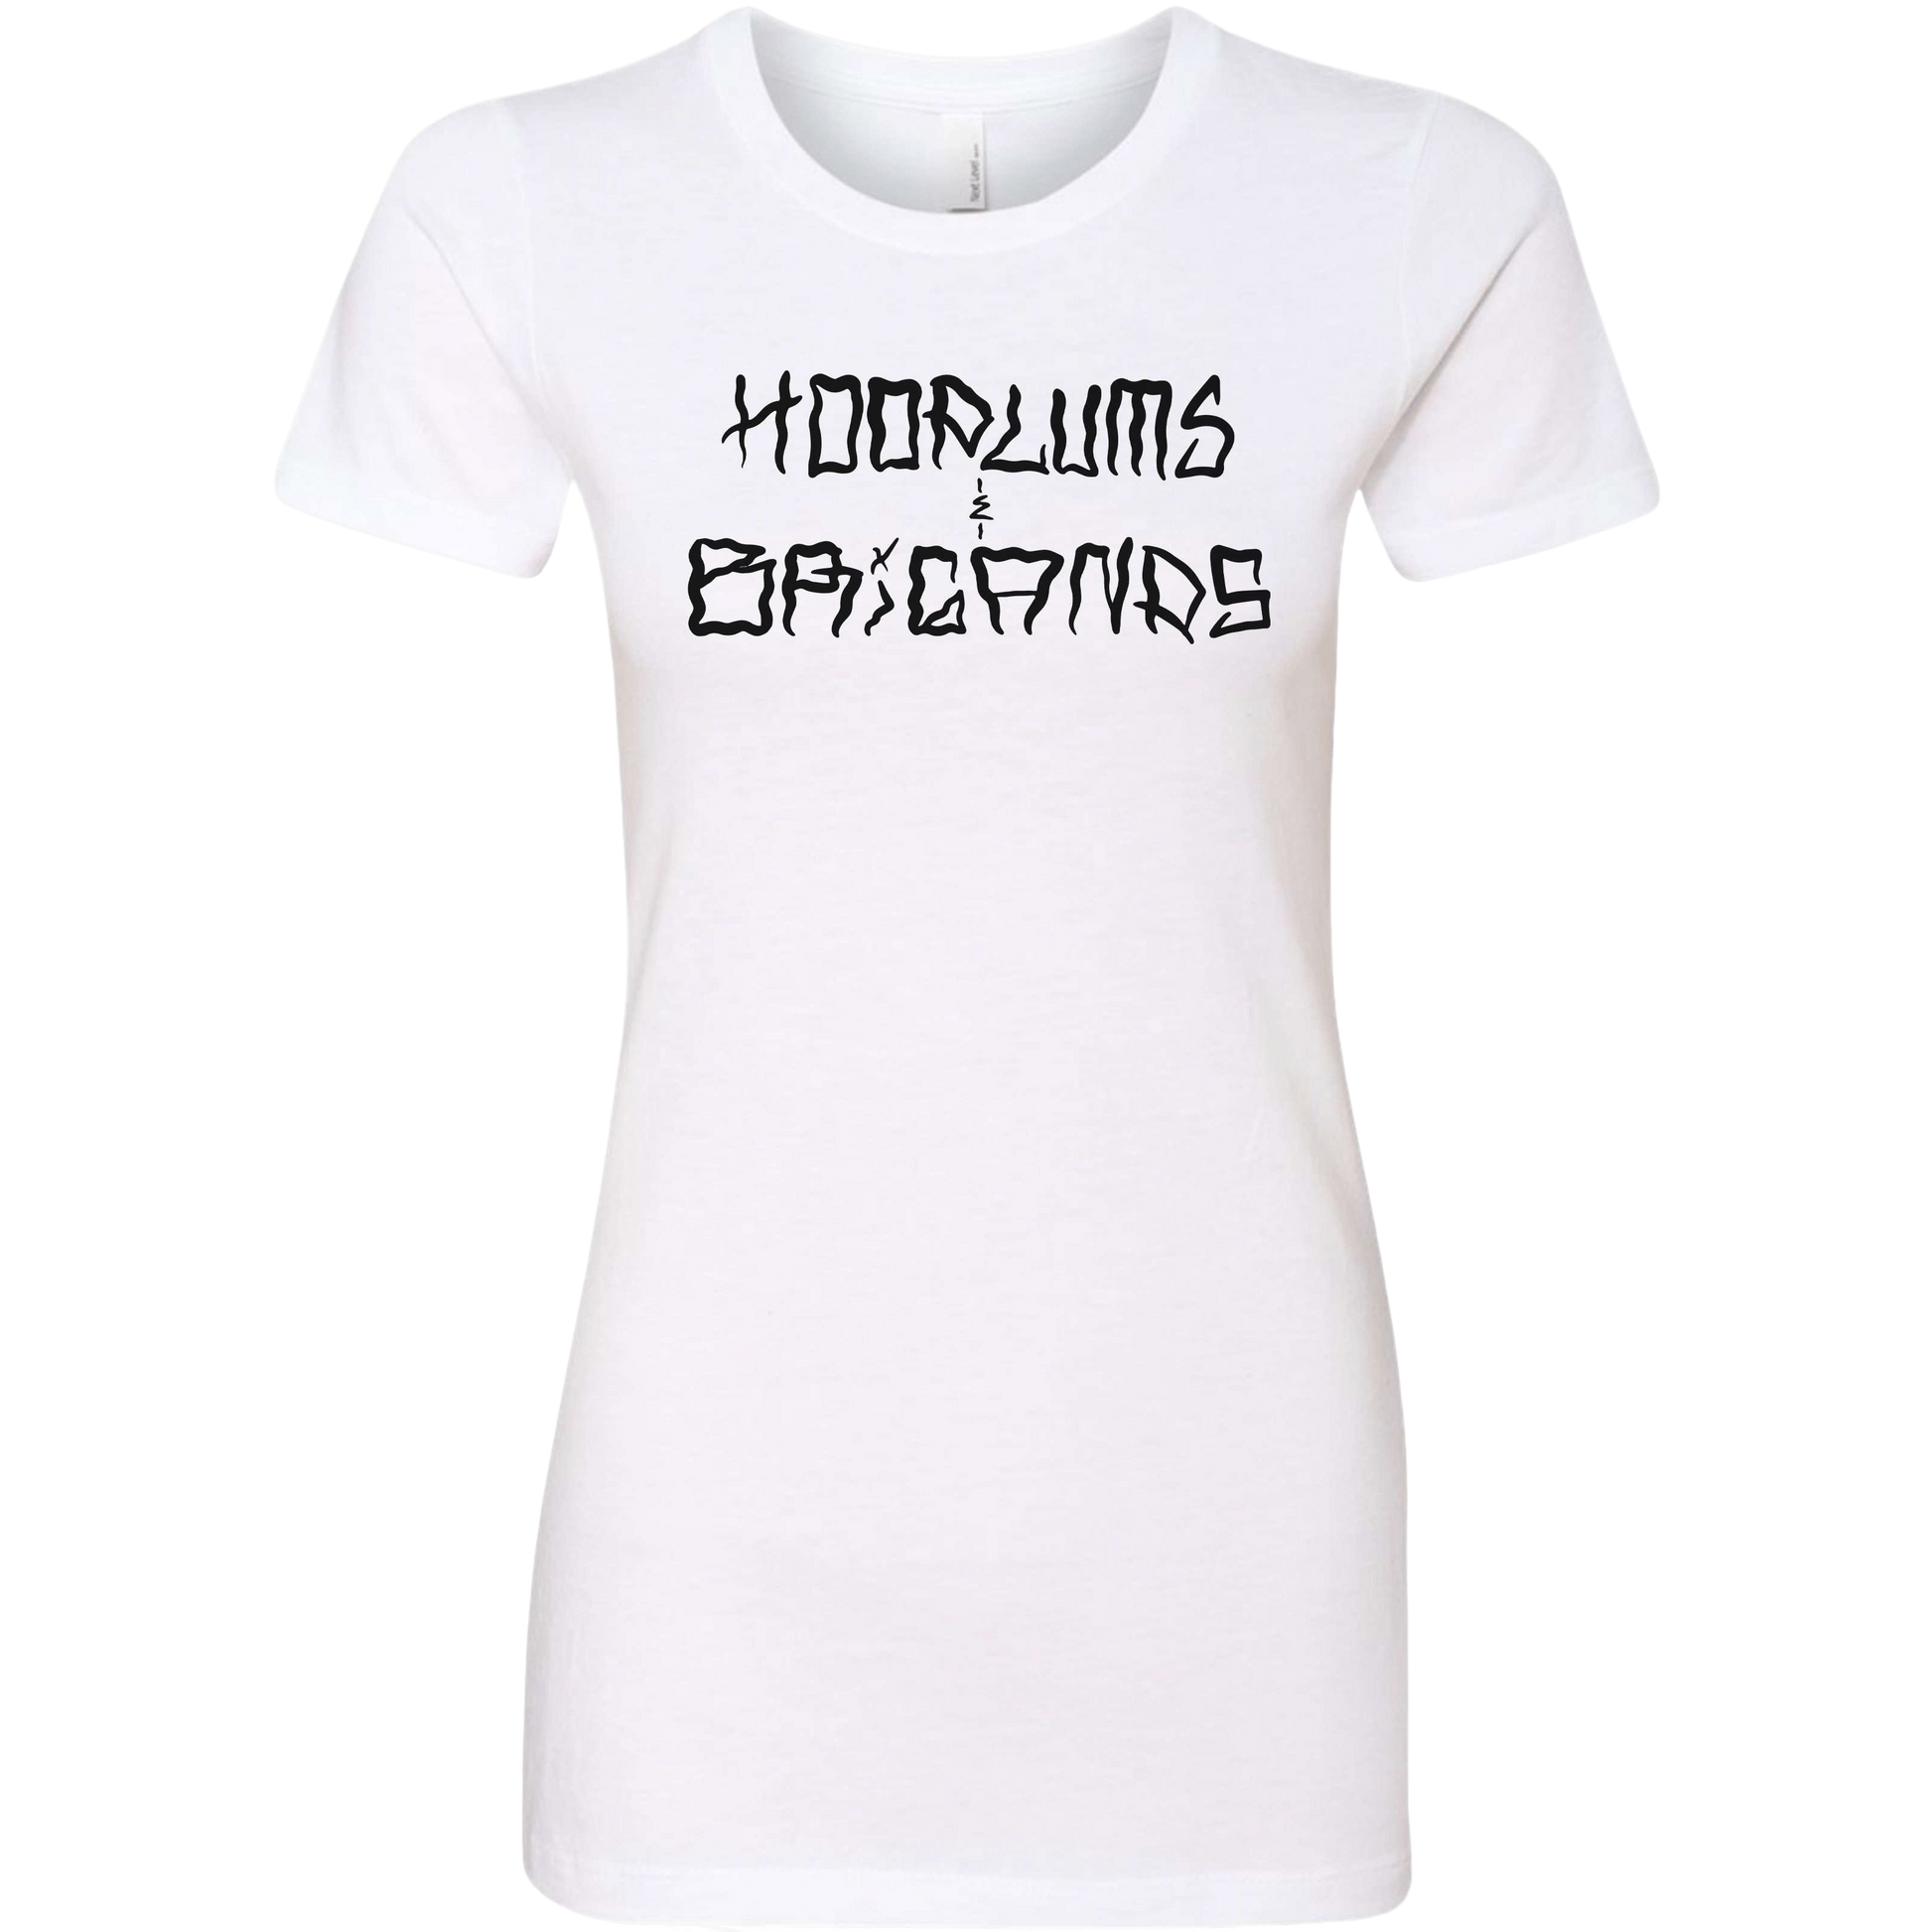 Hoodlums & Brigands Logo Women's T-Shirt - hdlm.brgnd